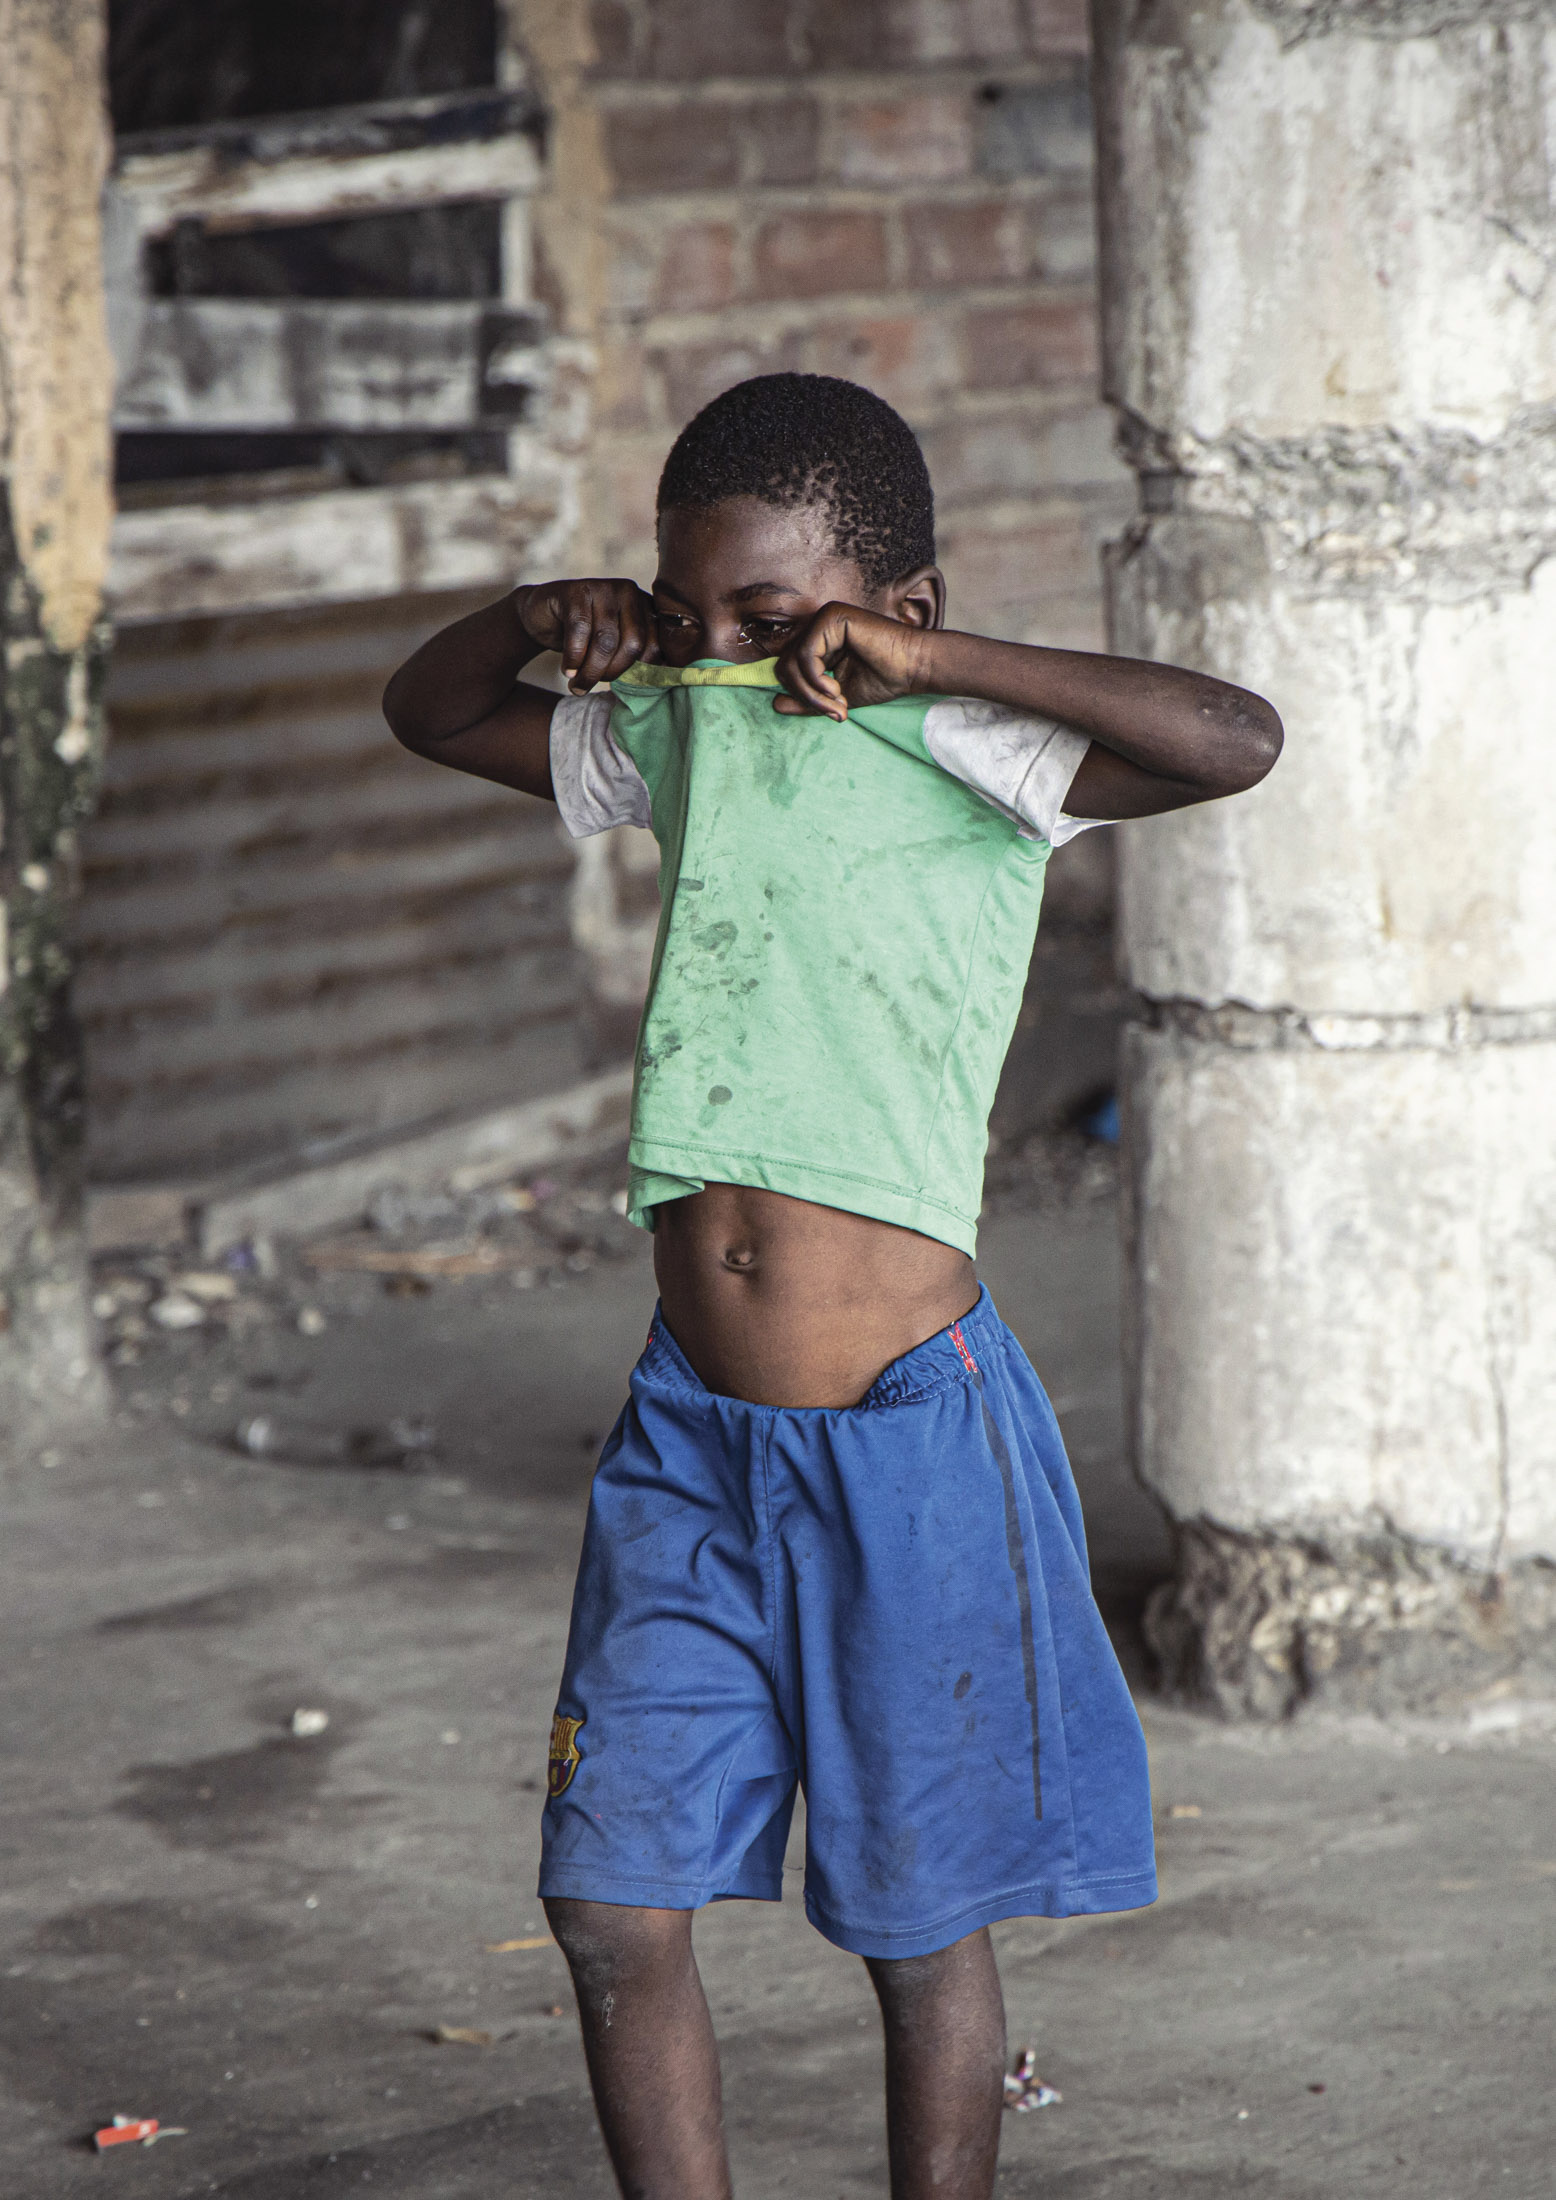 Ein Junge in einem grünen T-Shirt und blauen Shorts steht in einem heruntergekommenen Gebäude, hebt sein Hemd hoch, um sein Gesicht zu bedecken, und verschränkt die Arme. © Fotografie Tomas Rodriguez